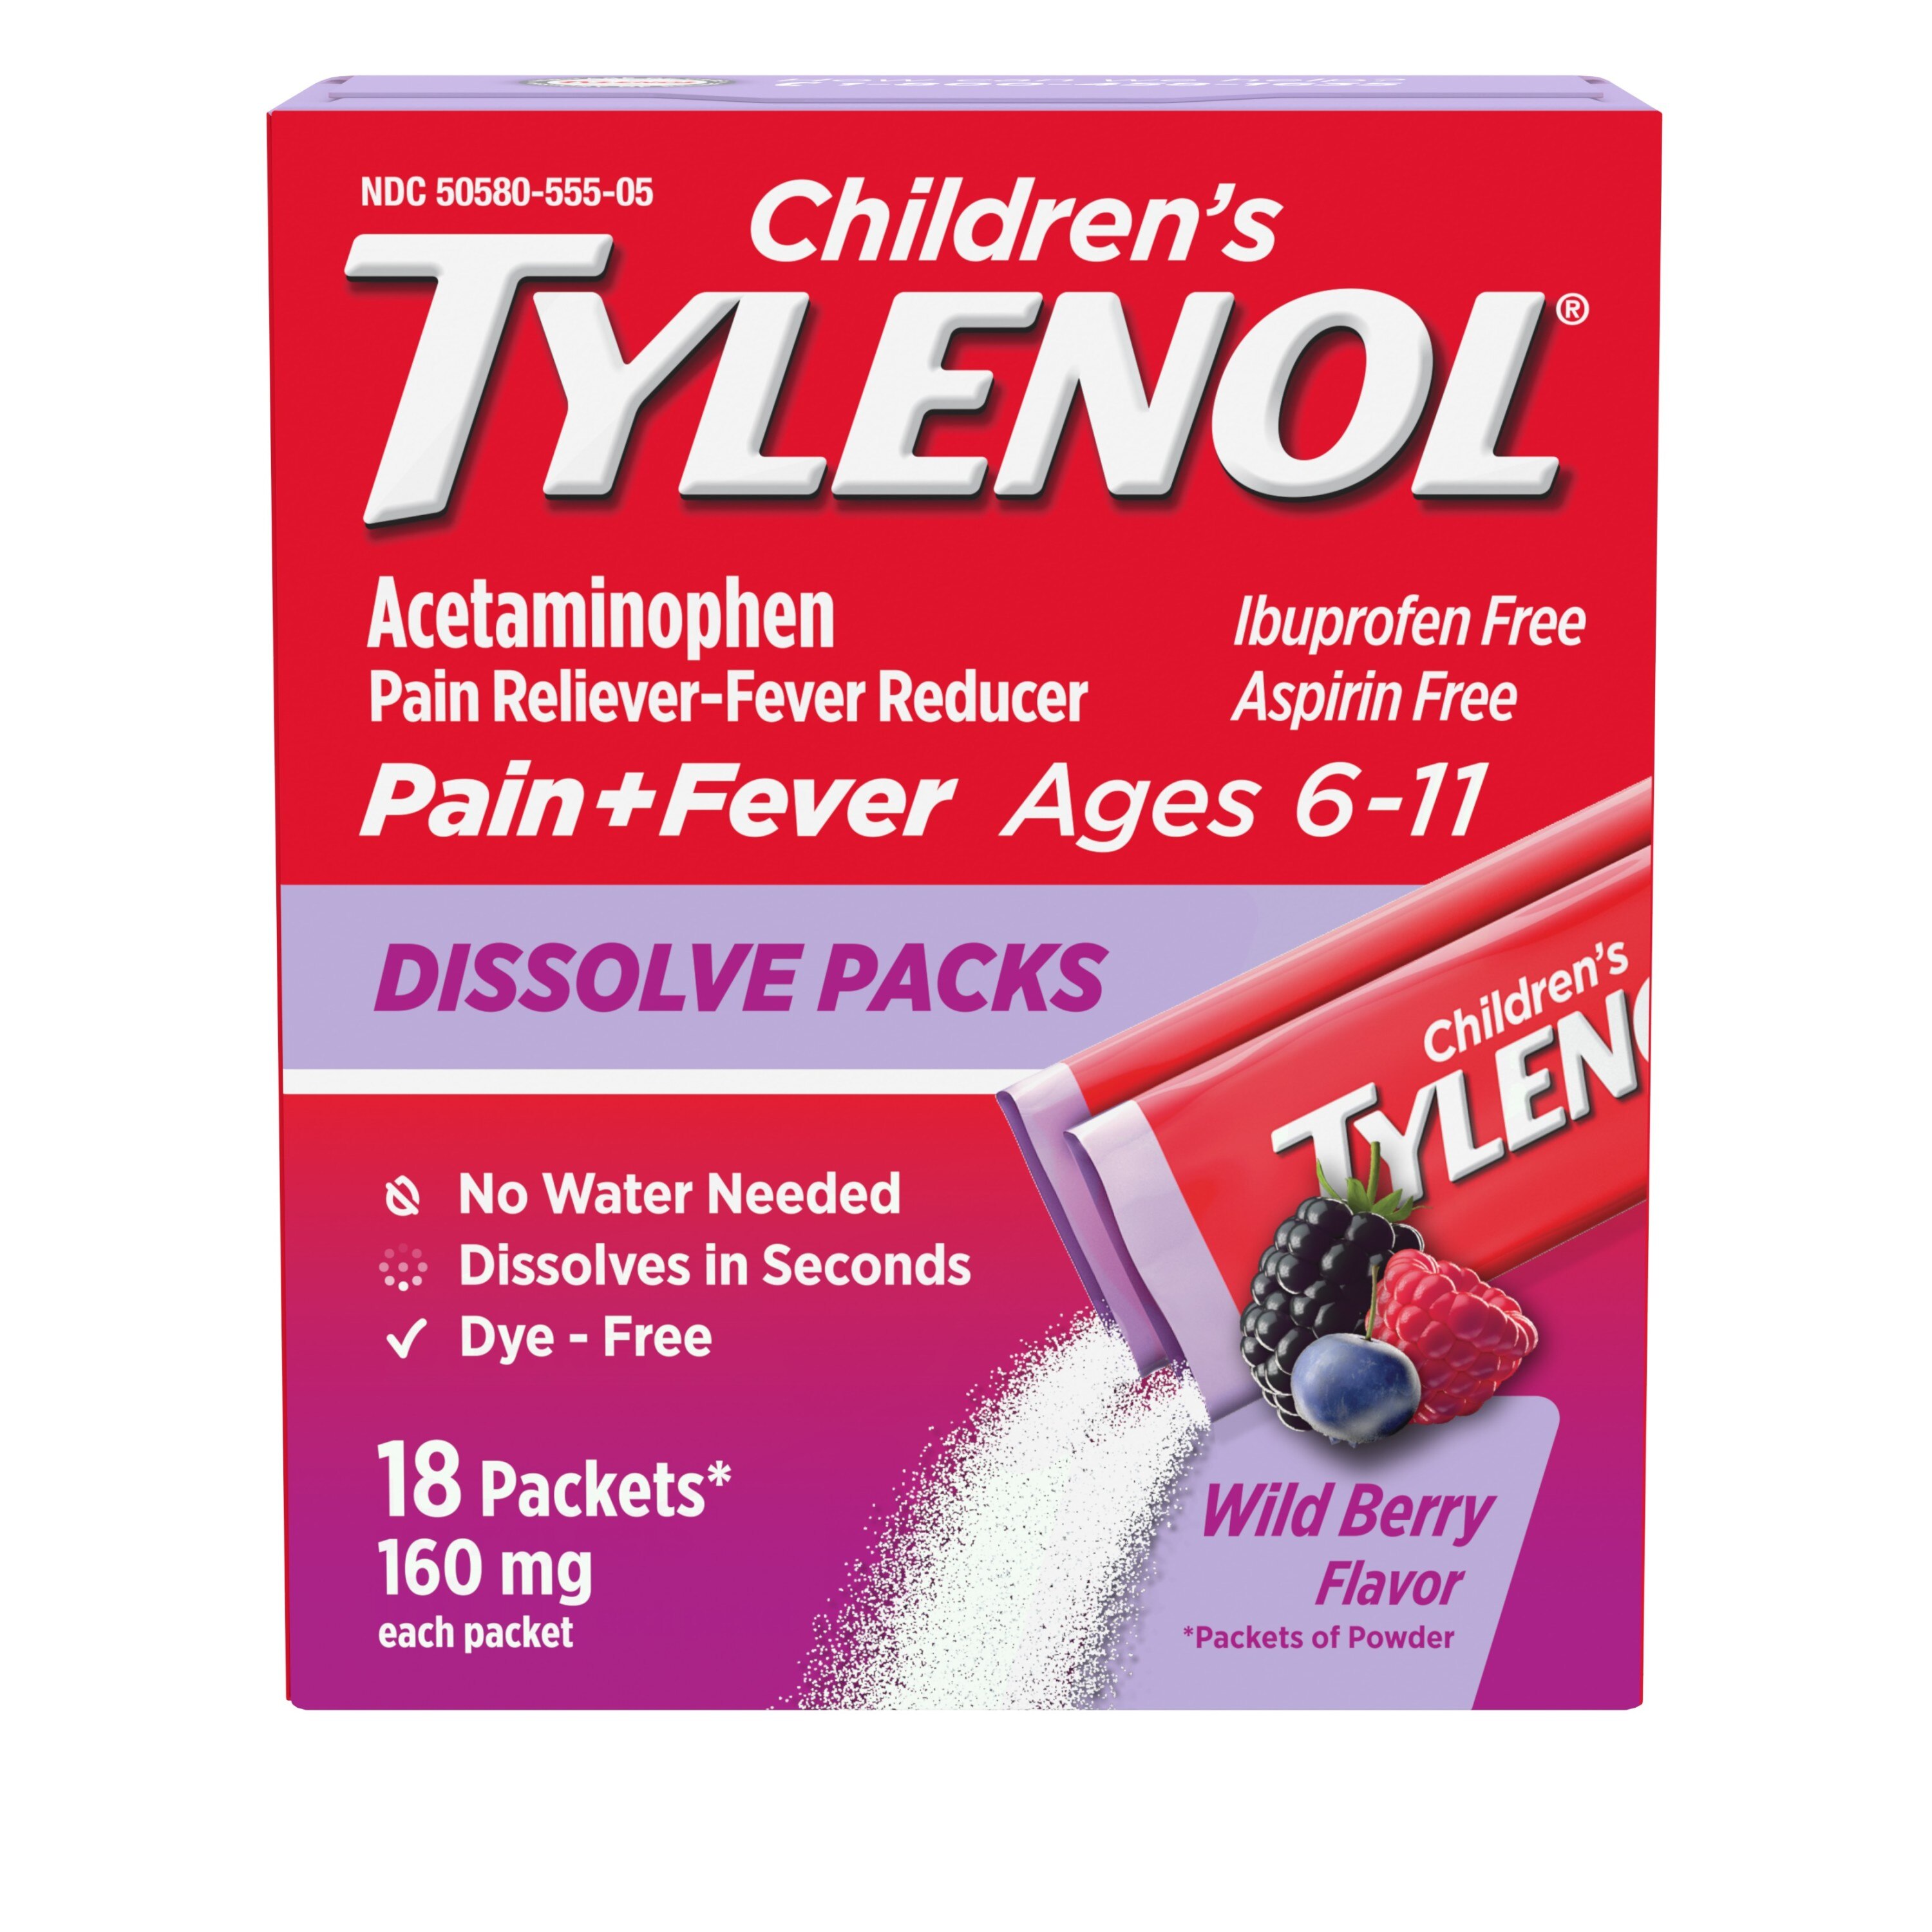 Children's Tylenol Acetaminophen Dissolve Packets, Wild Berry